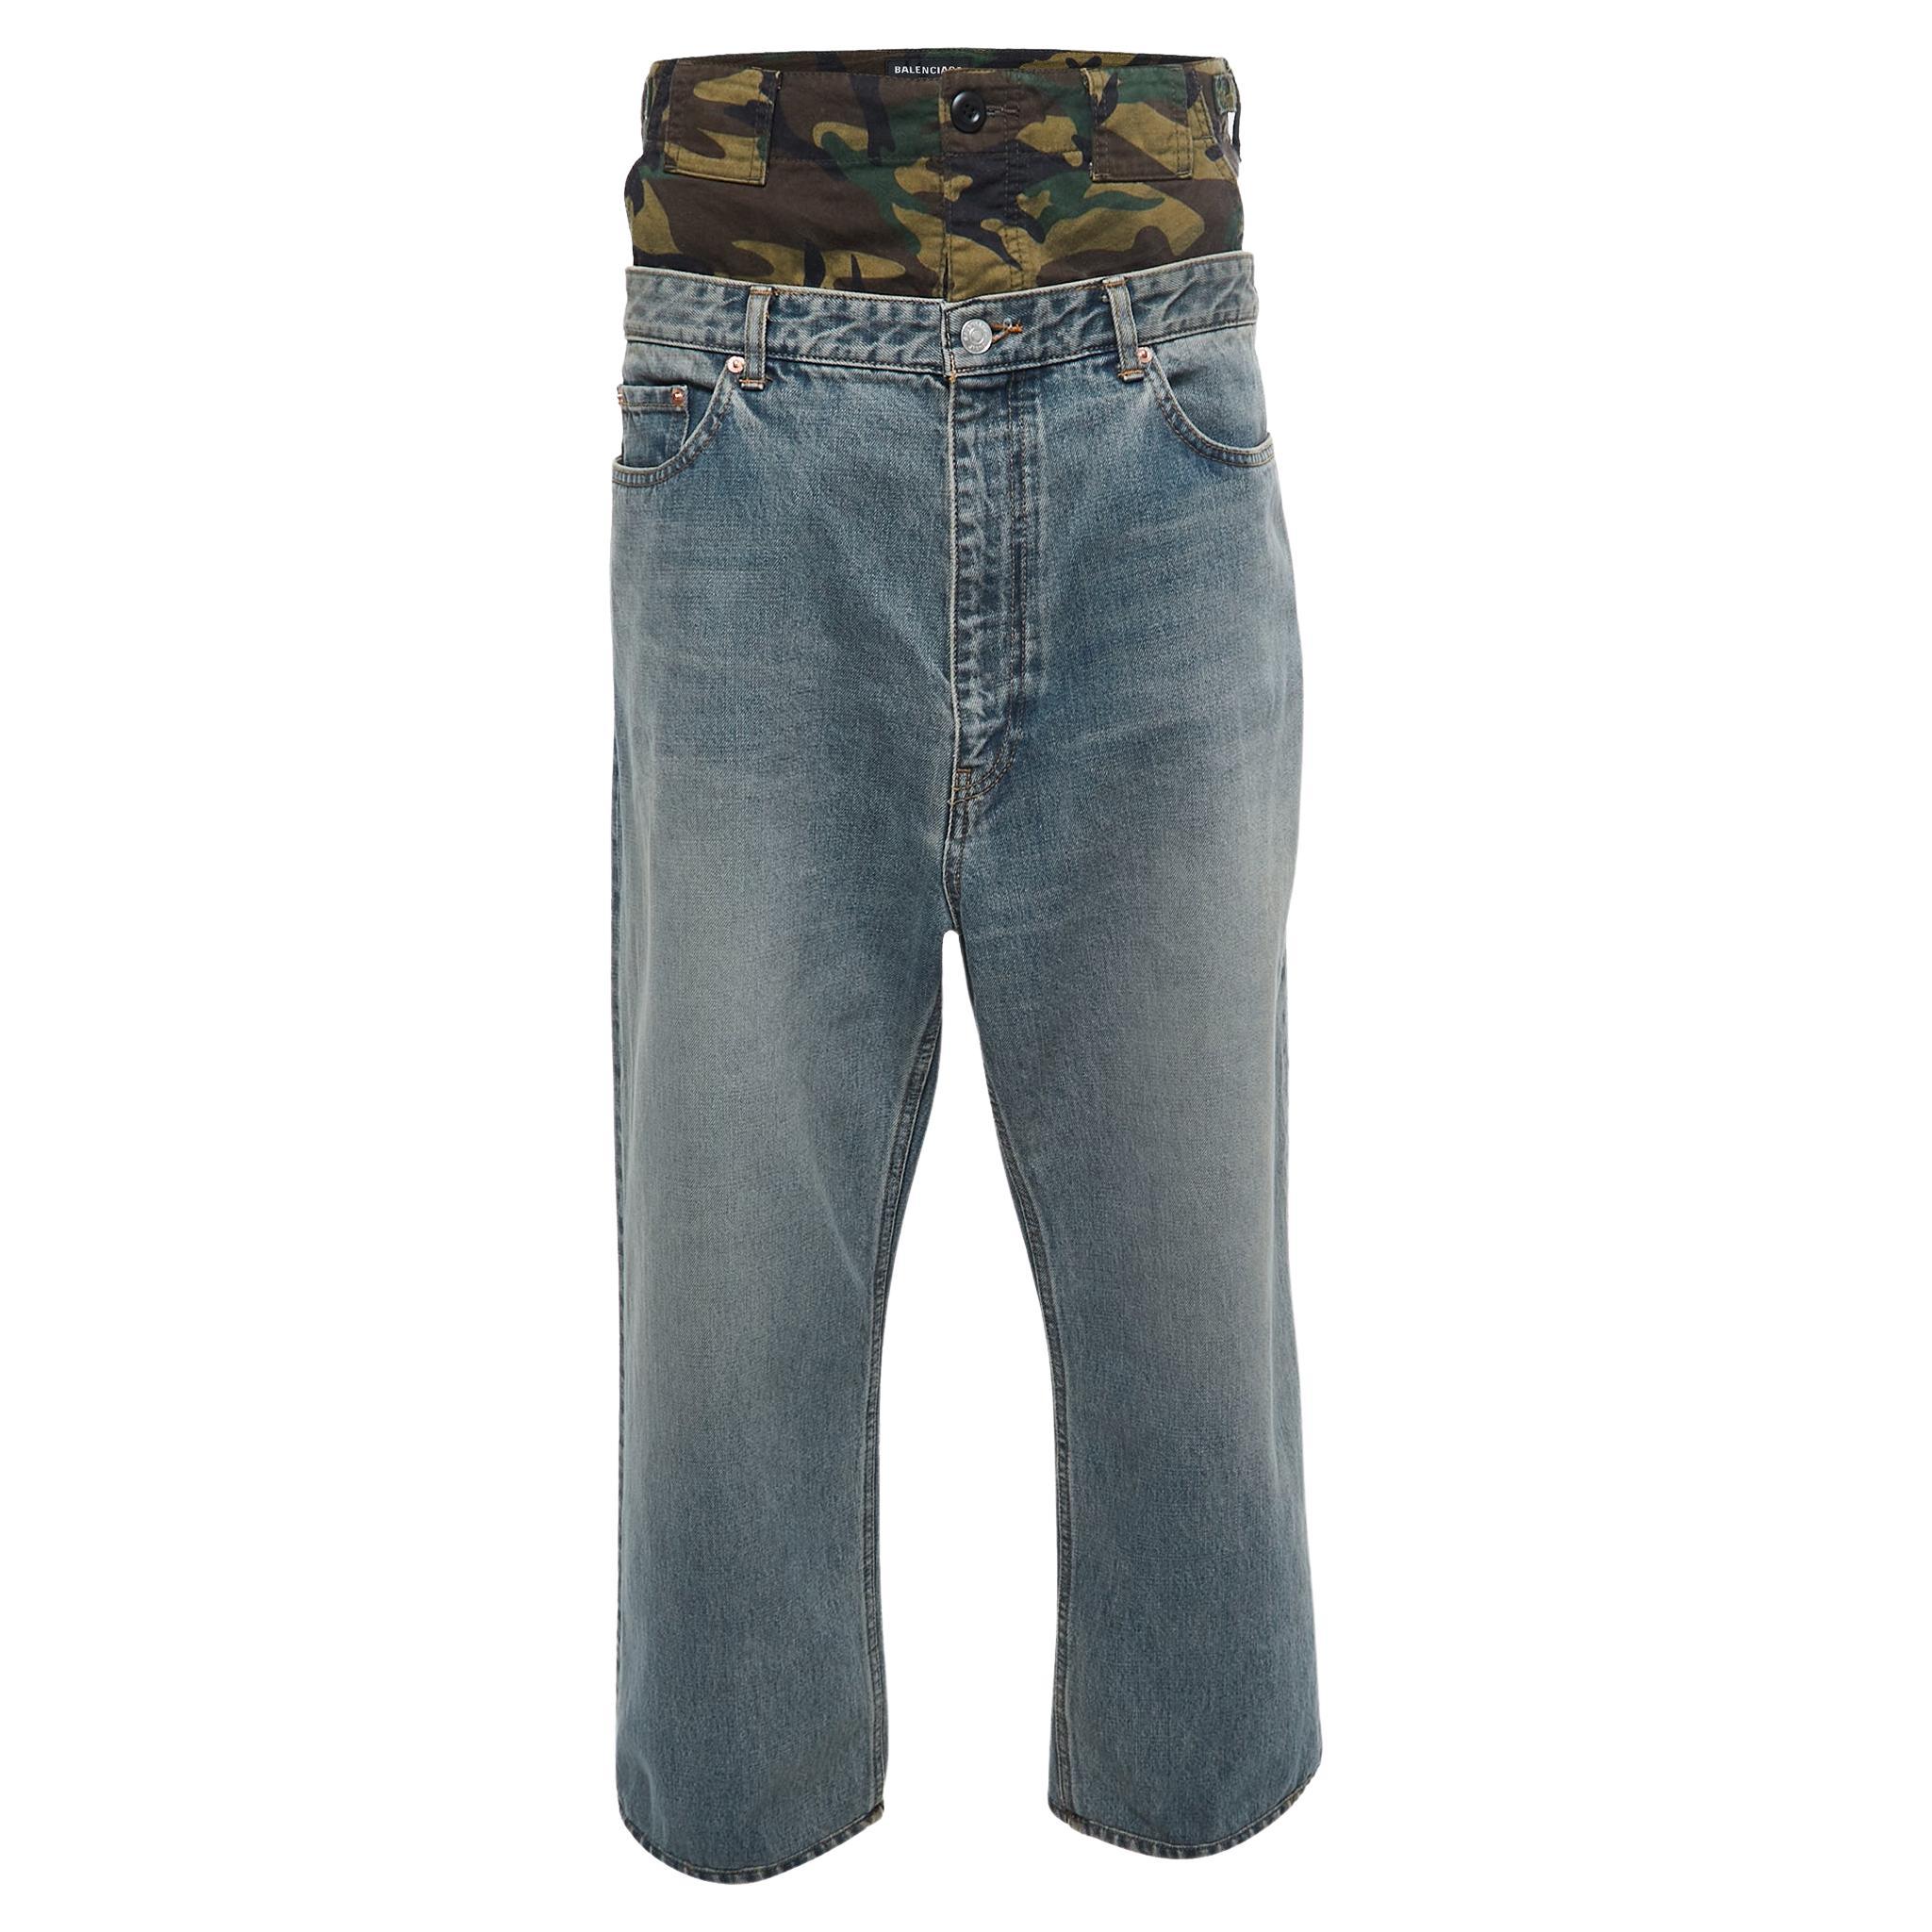 Jeans mit mehrlagigem Camouflage-Paneel von Balenciaga, leicht gewaschen, M / Taille 33"